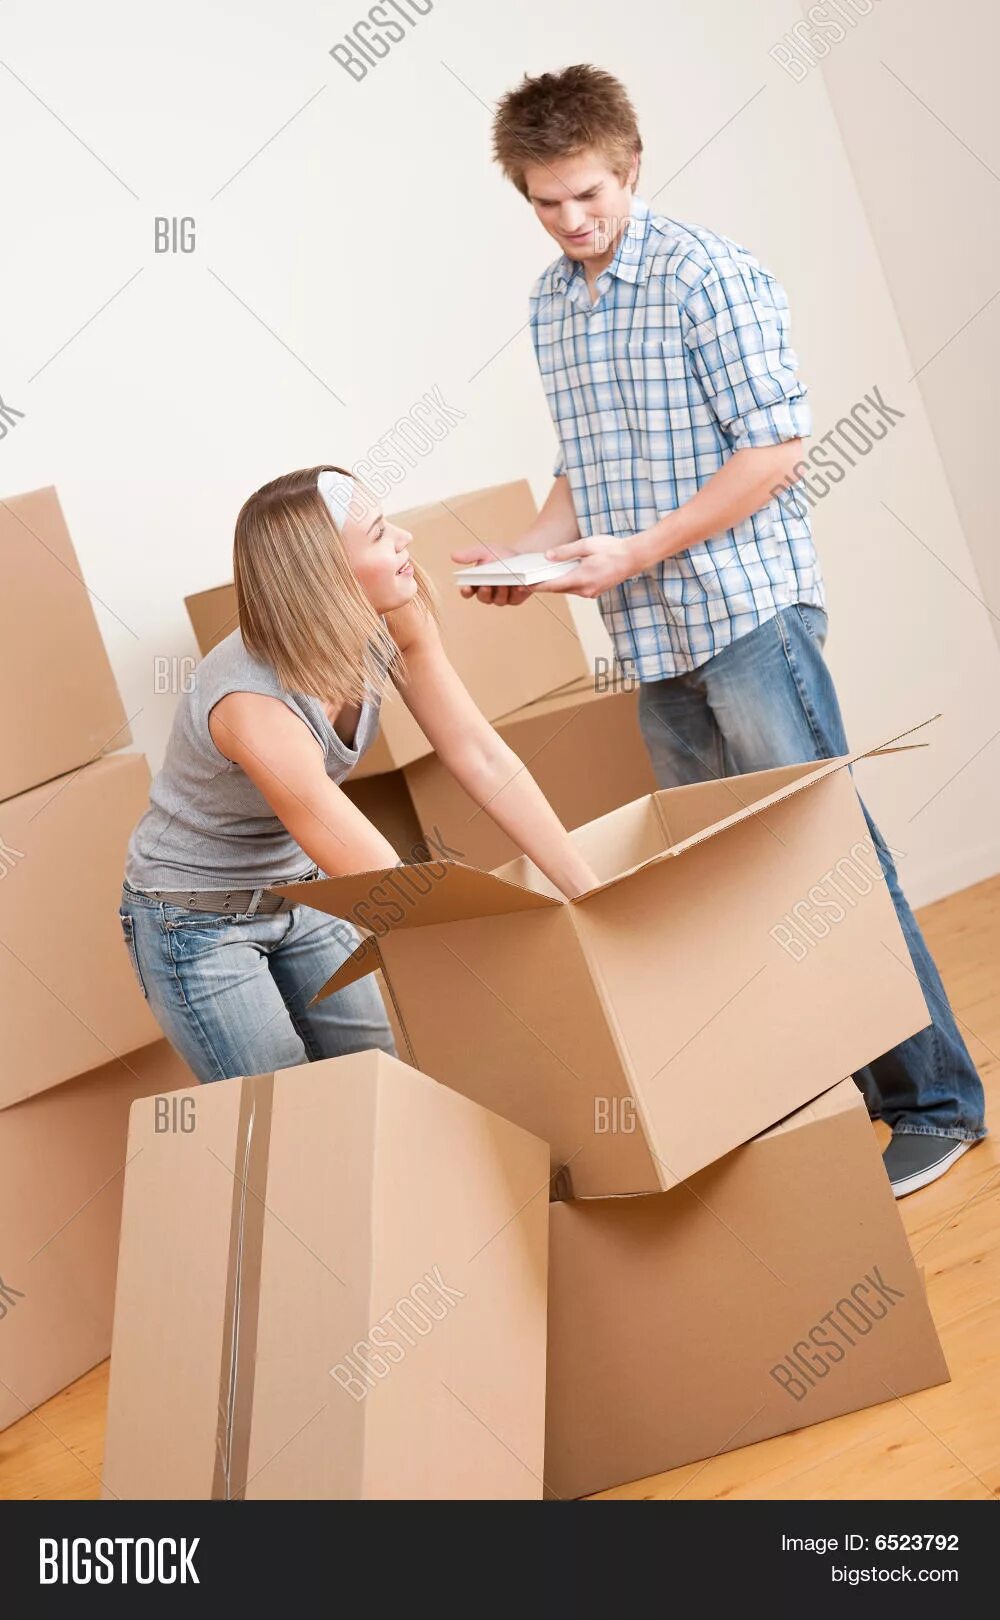 Молодежь переезжает. Переезд молодых. Женщина распаковывает ящики после переезда. Игра про переезд и распаковку вещей. We have moved to a new